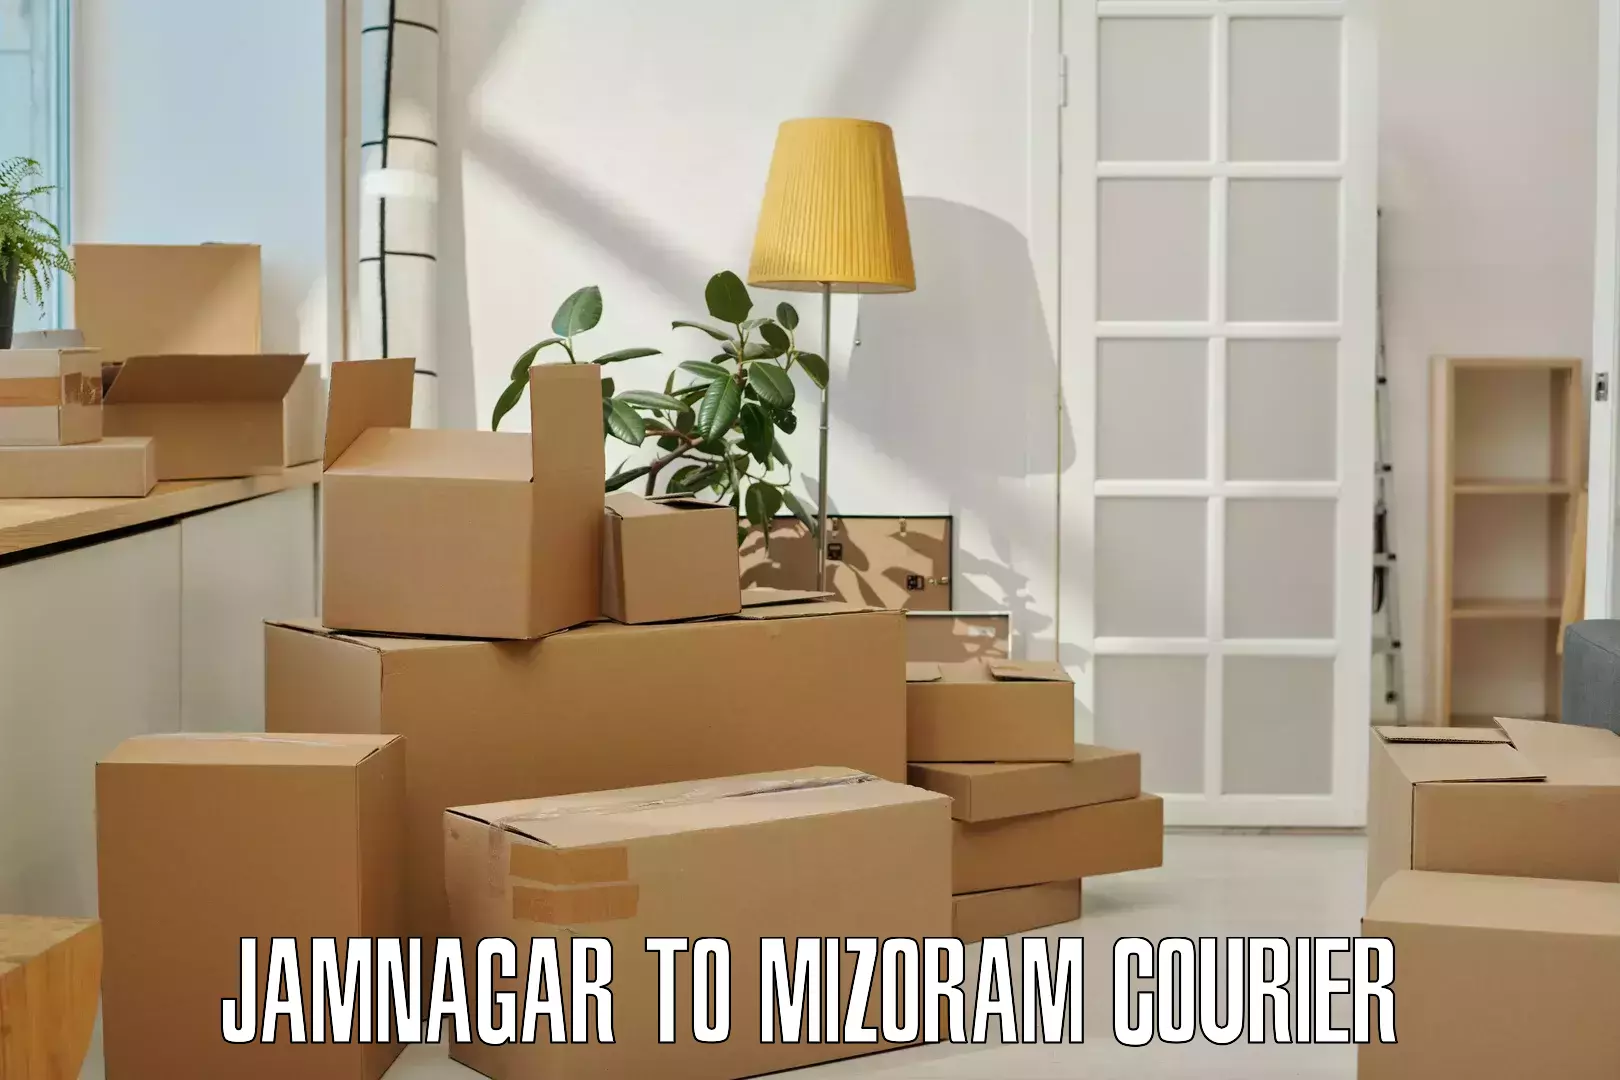 Doorstep delivery service in Jamnagar to Mizoram